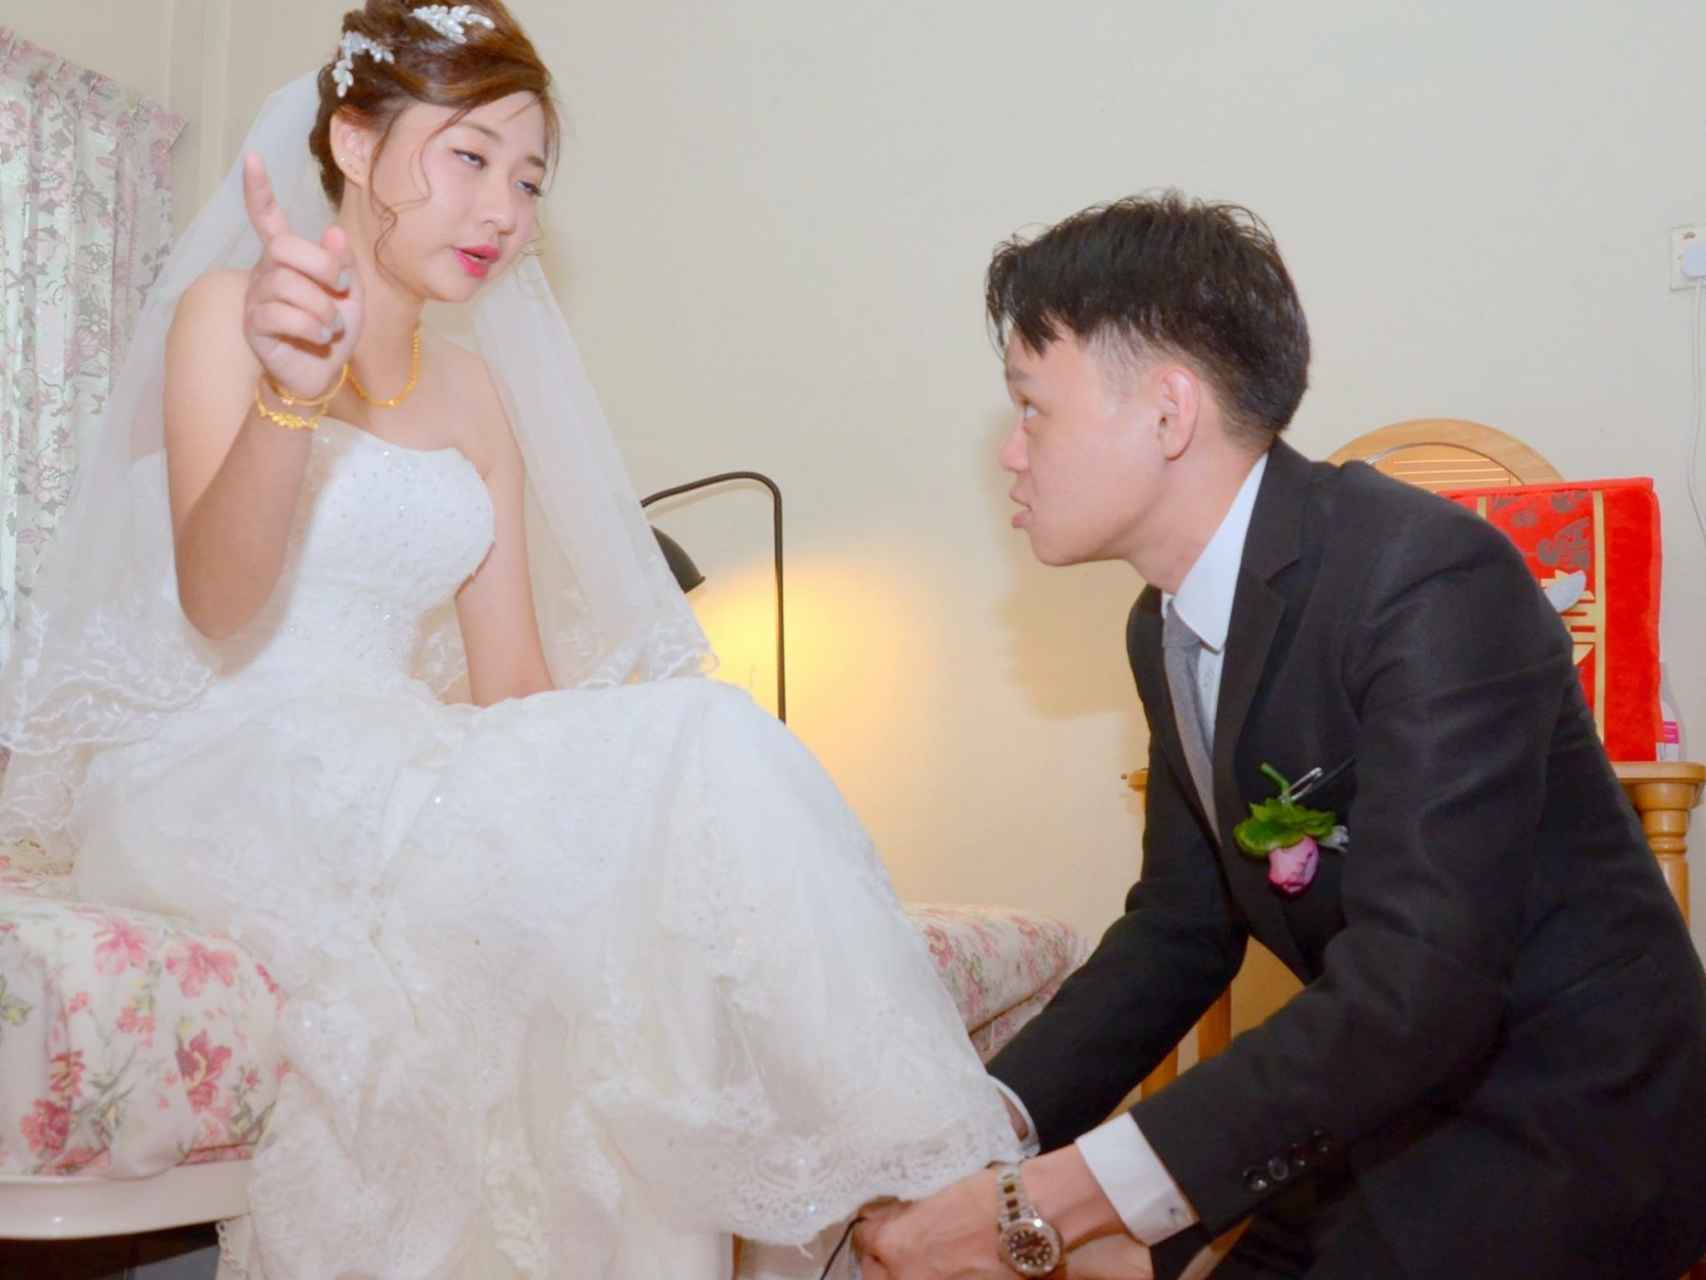 La novia captada por el peor fotógrafo de bodas del mundo